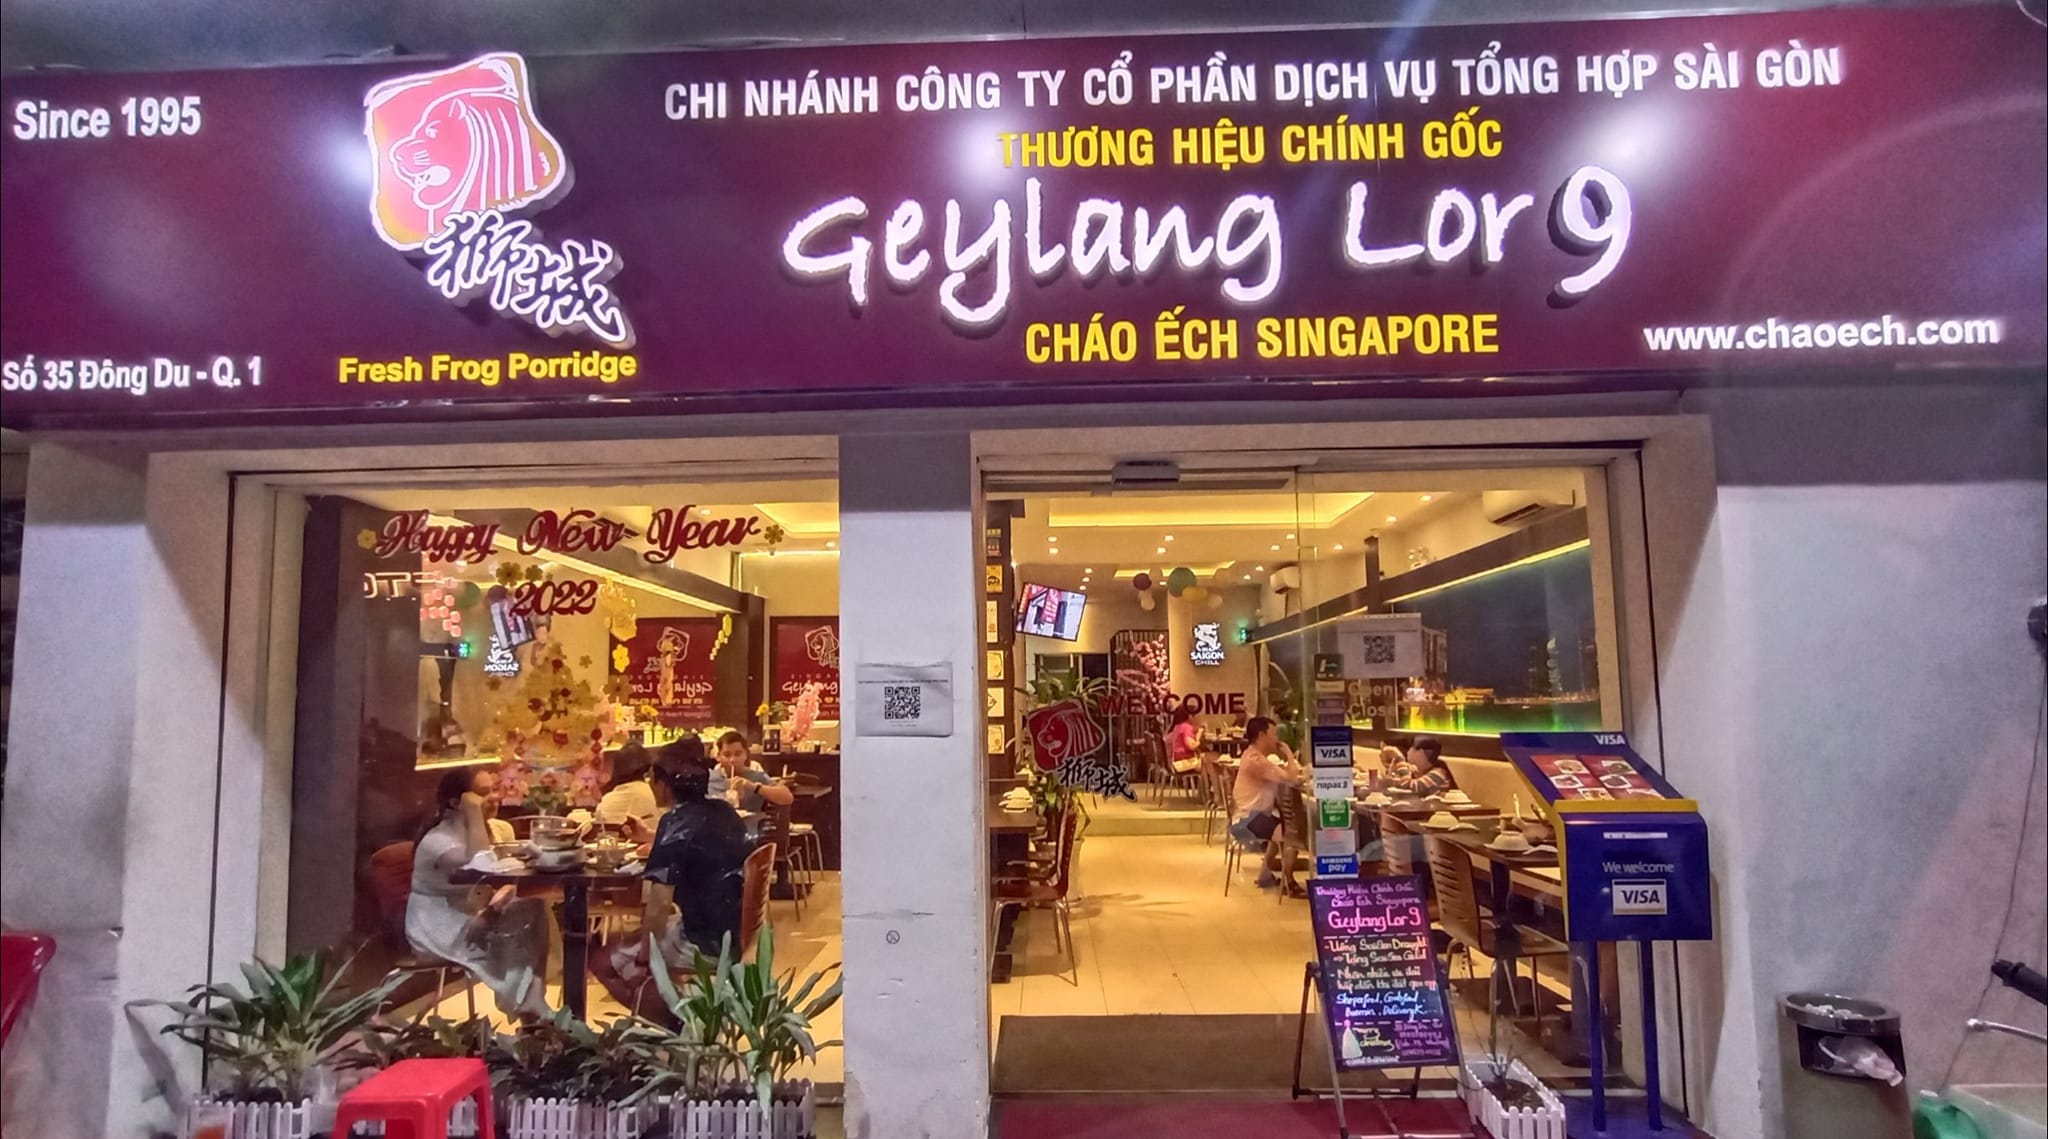 Nhà hàng Geylang Lor 9 ảnh 3